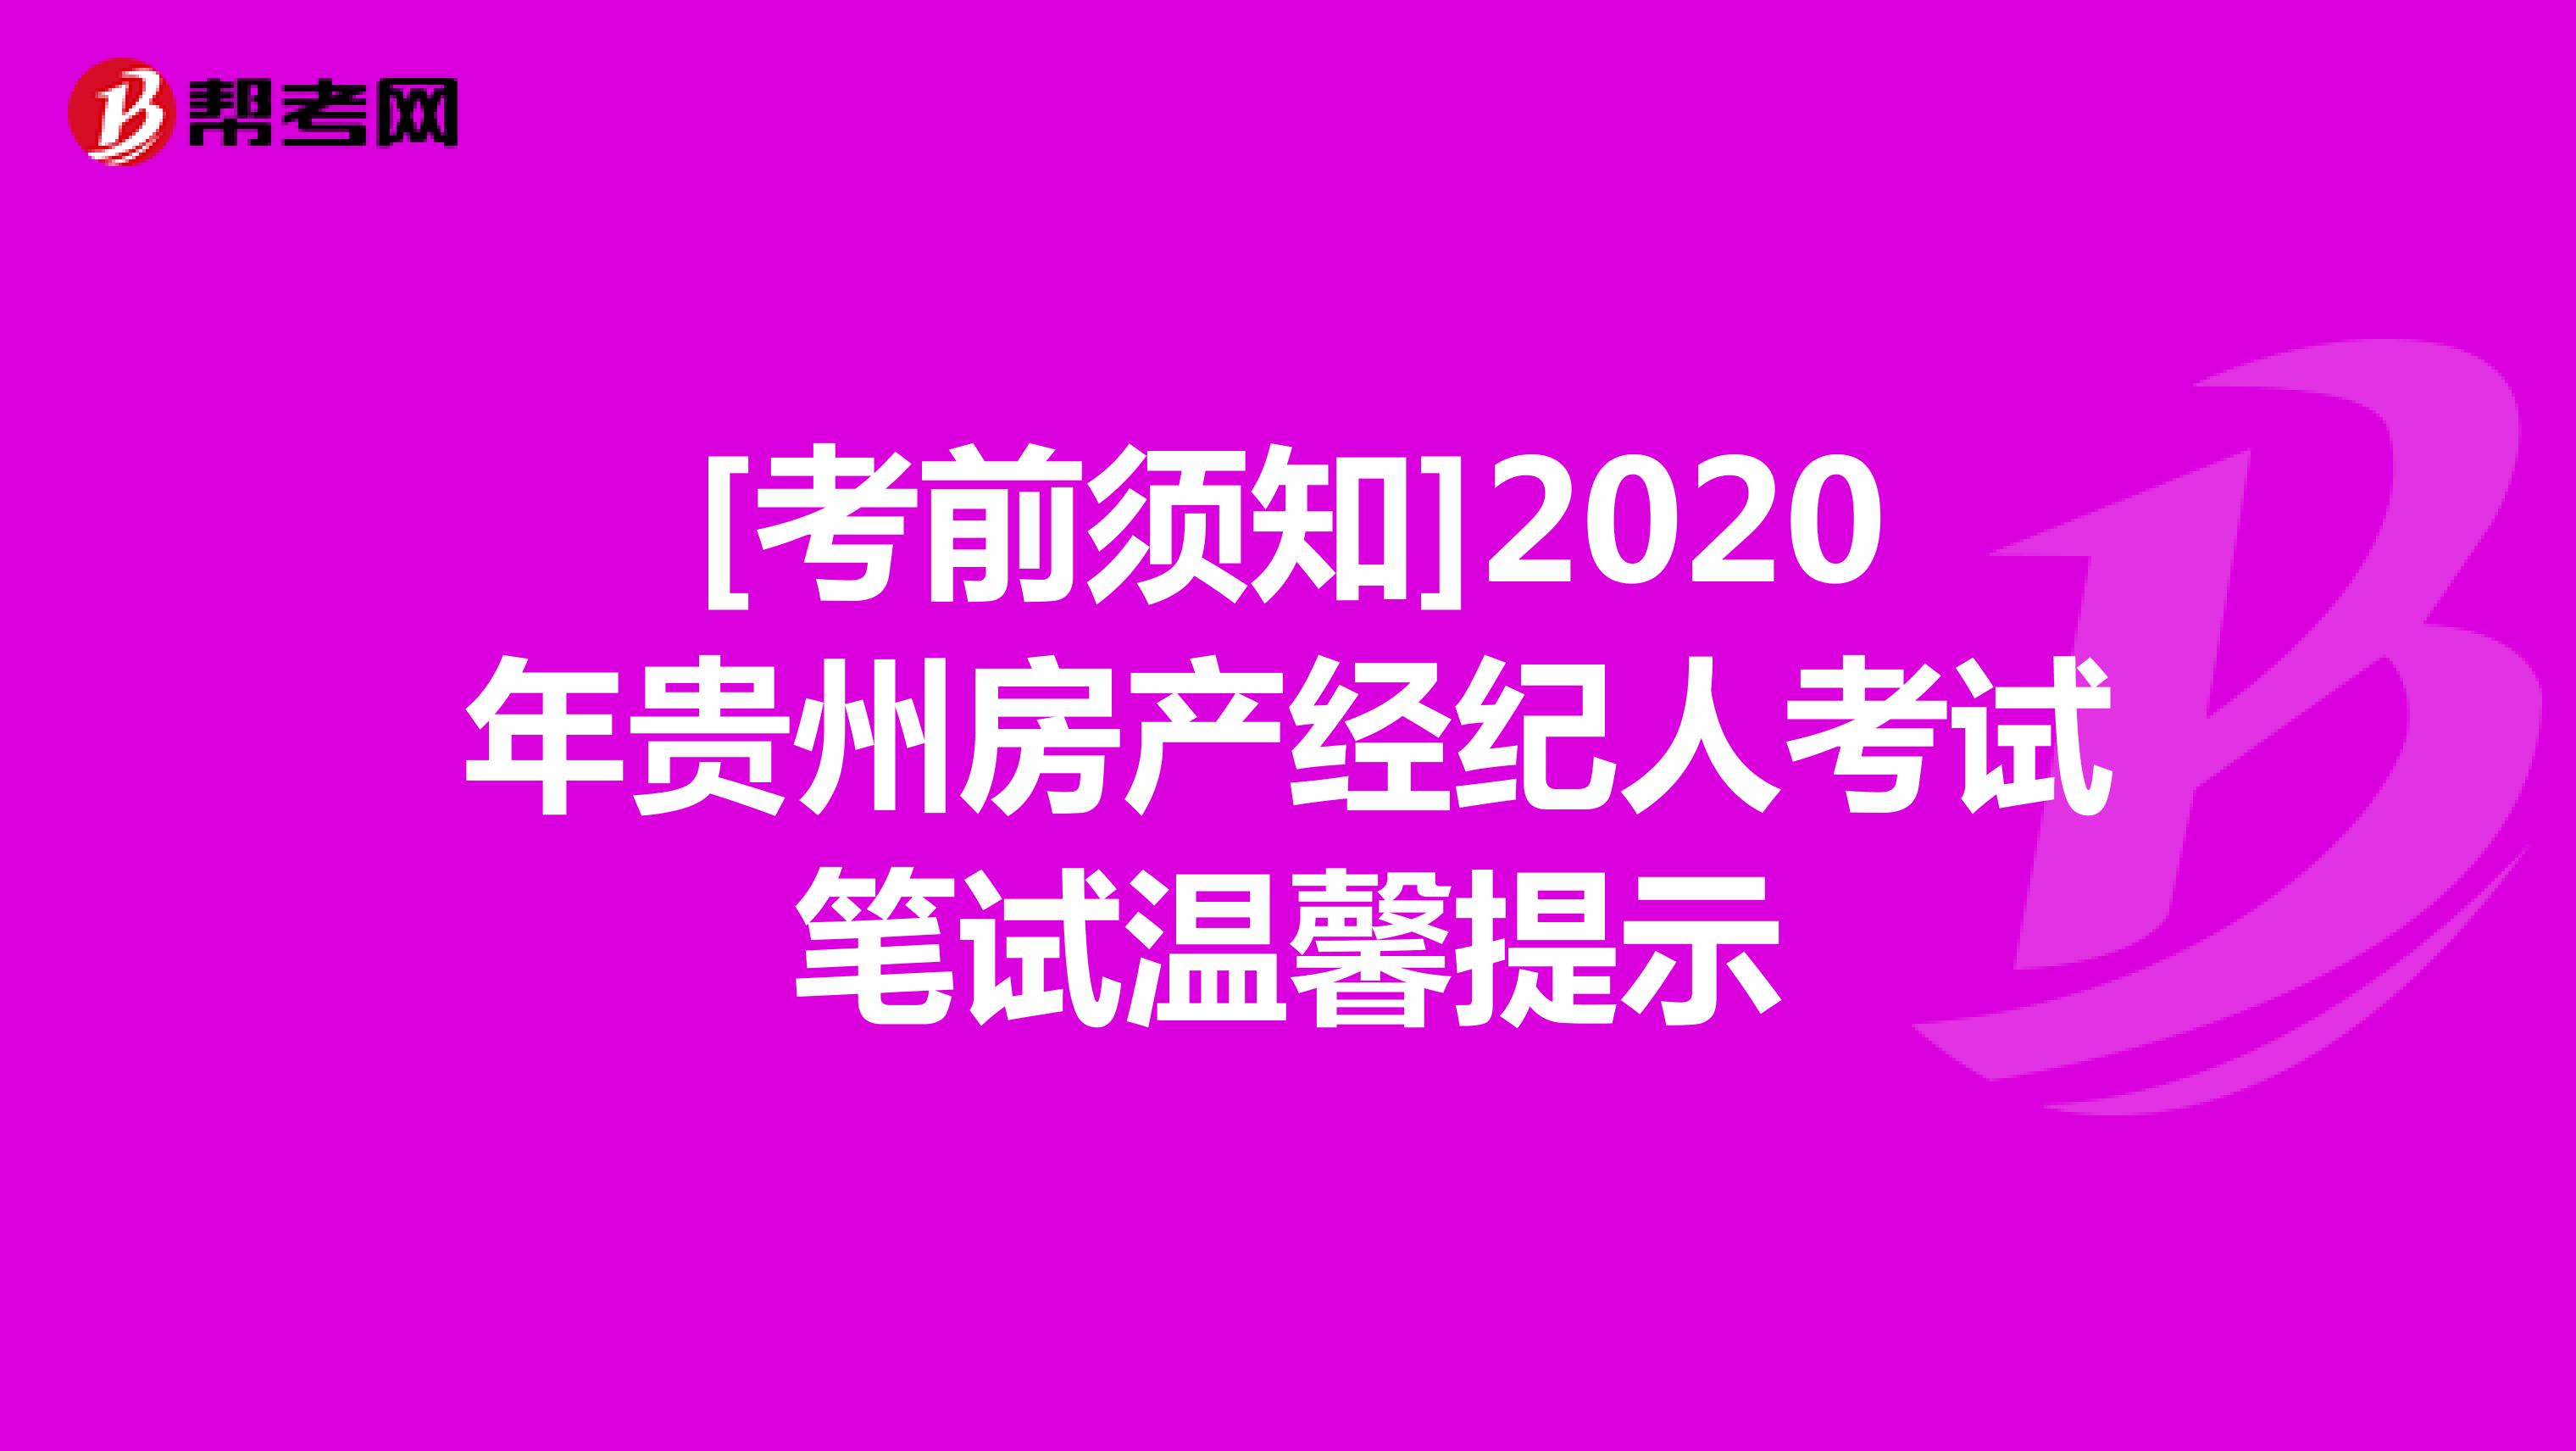 [考前须知]2020年贵州房产经纪人考试笔试温馨提示